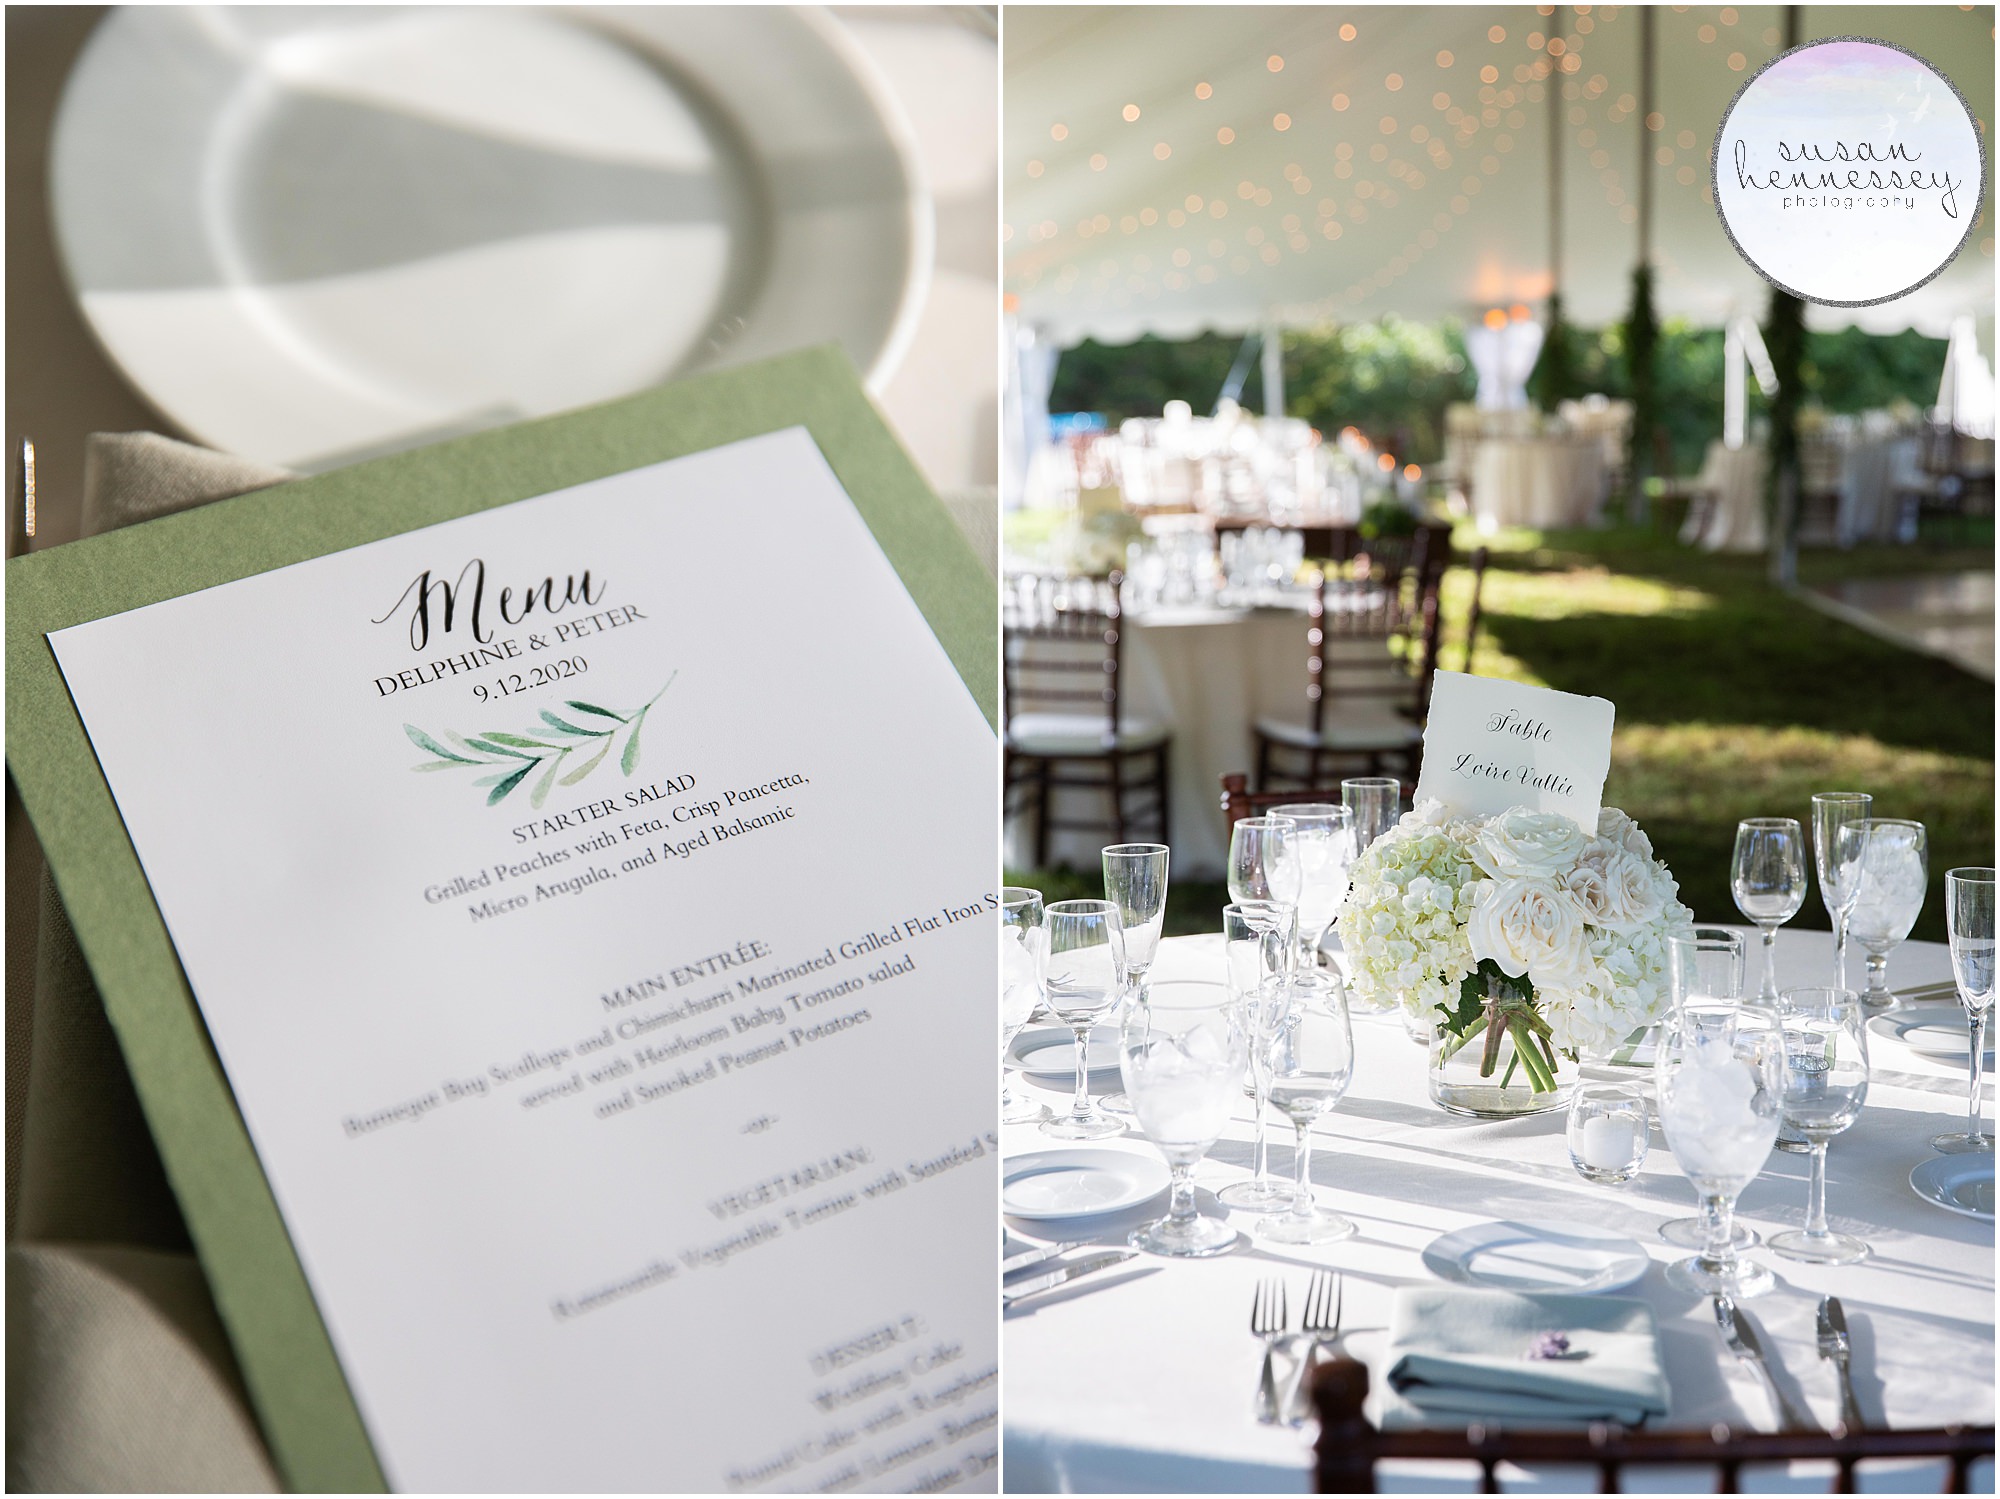 Reception details at Inn at Barley Sheaf Farm wedding